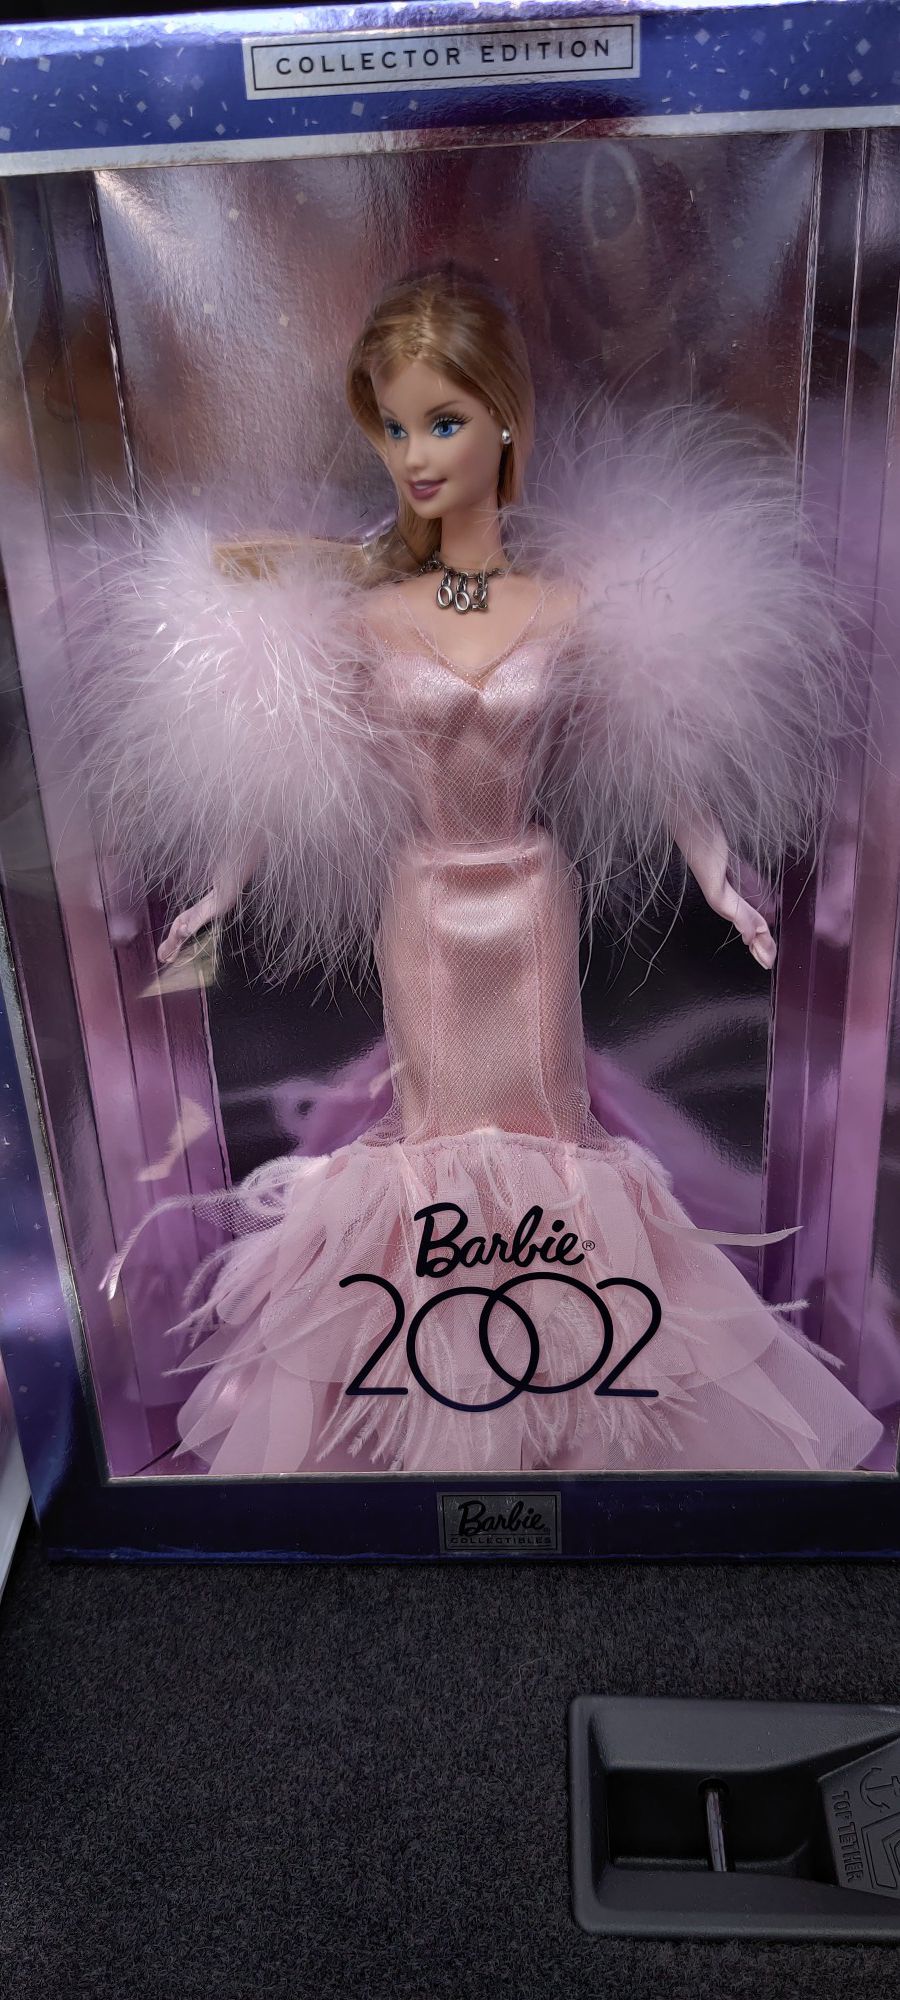 2002 Collectors Edition Barbie